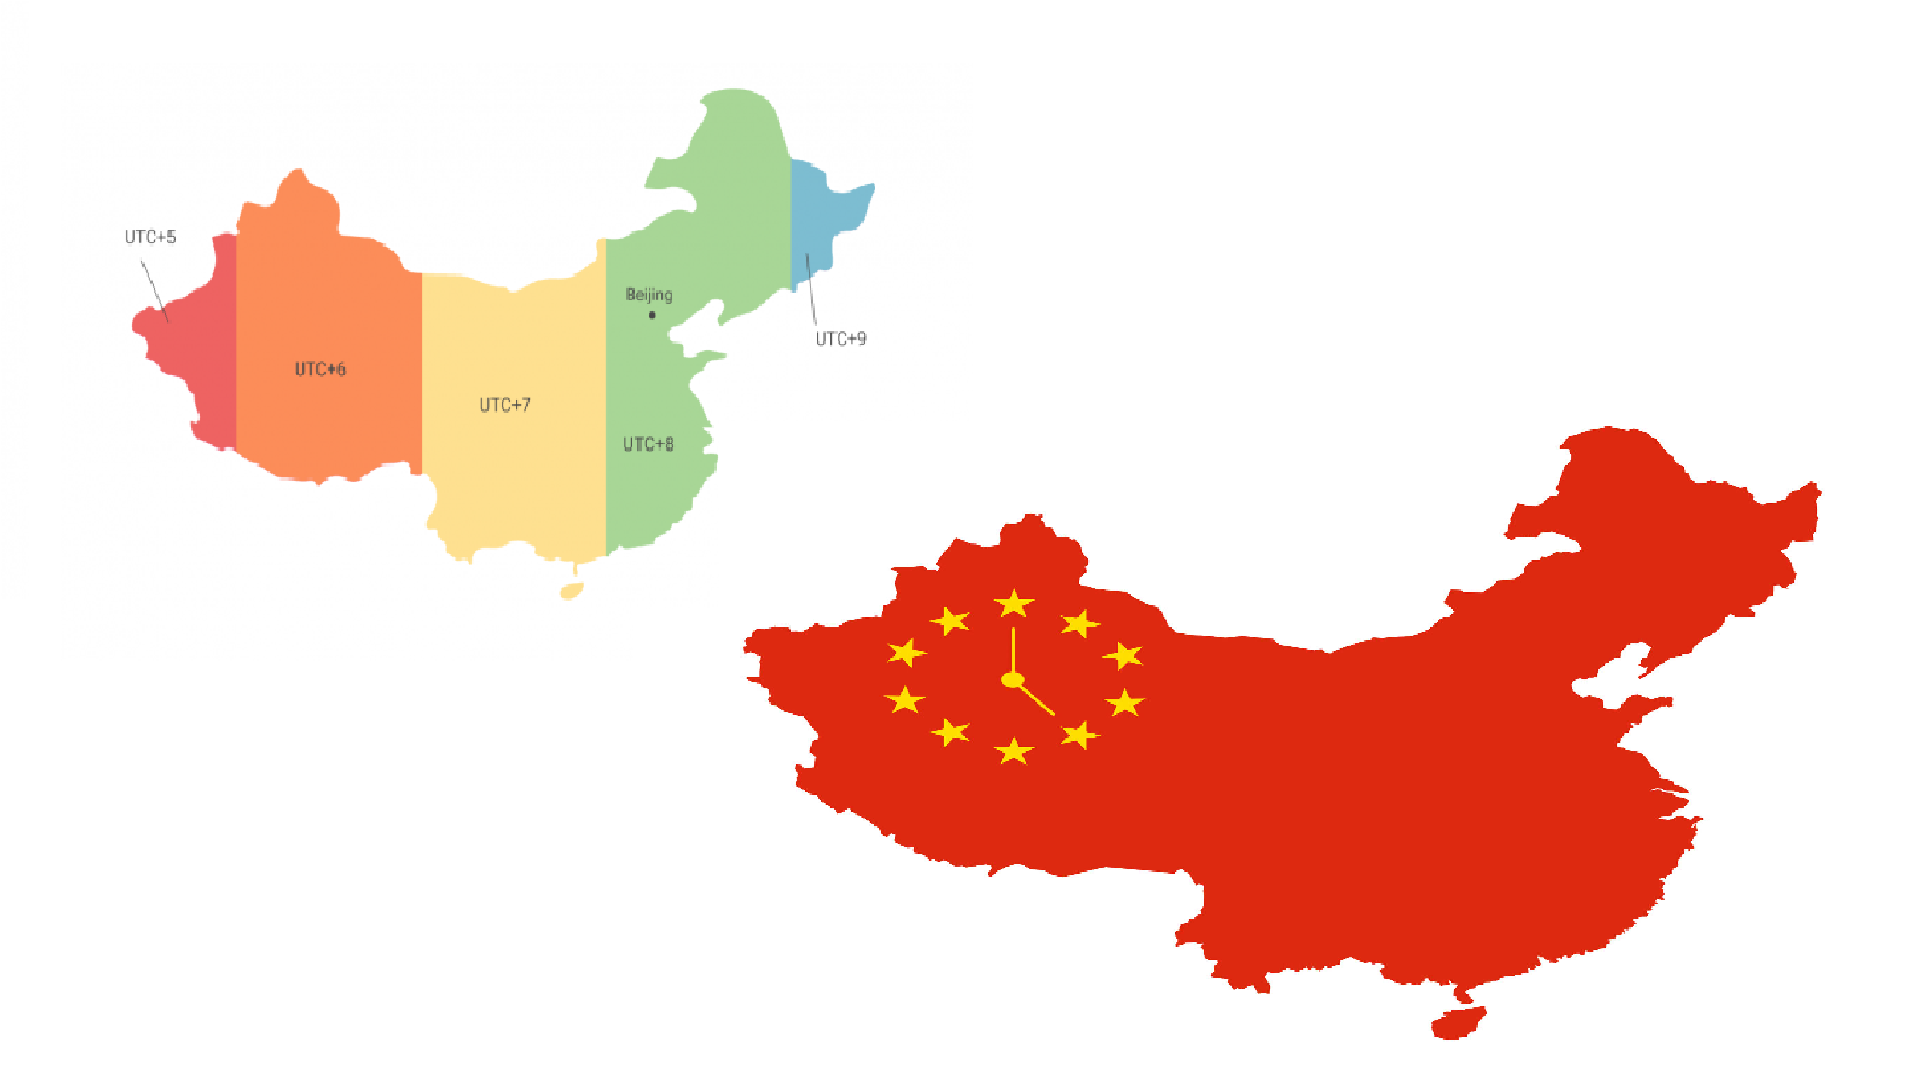 Obrázek časového pásma v číně